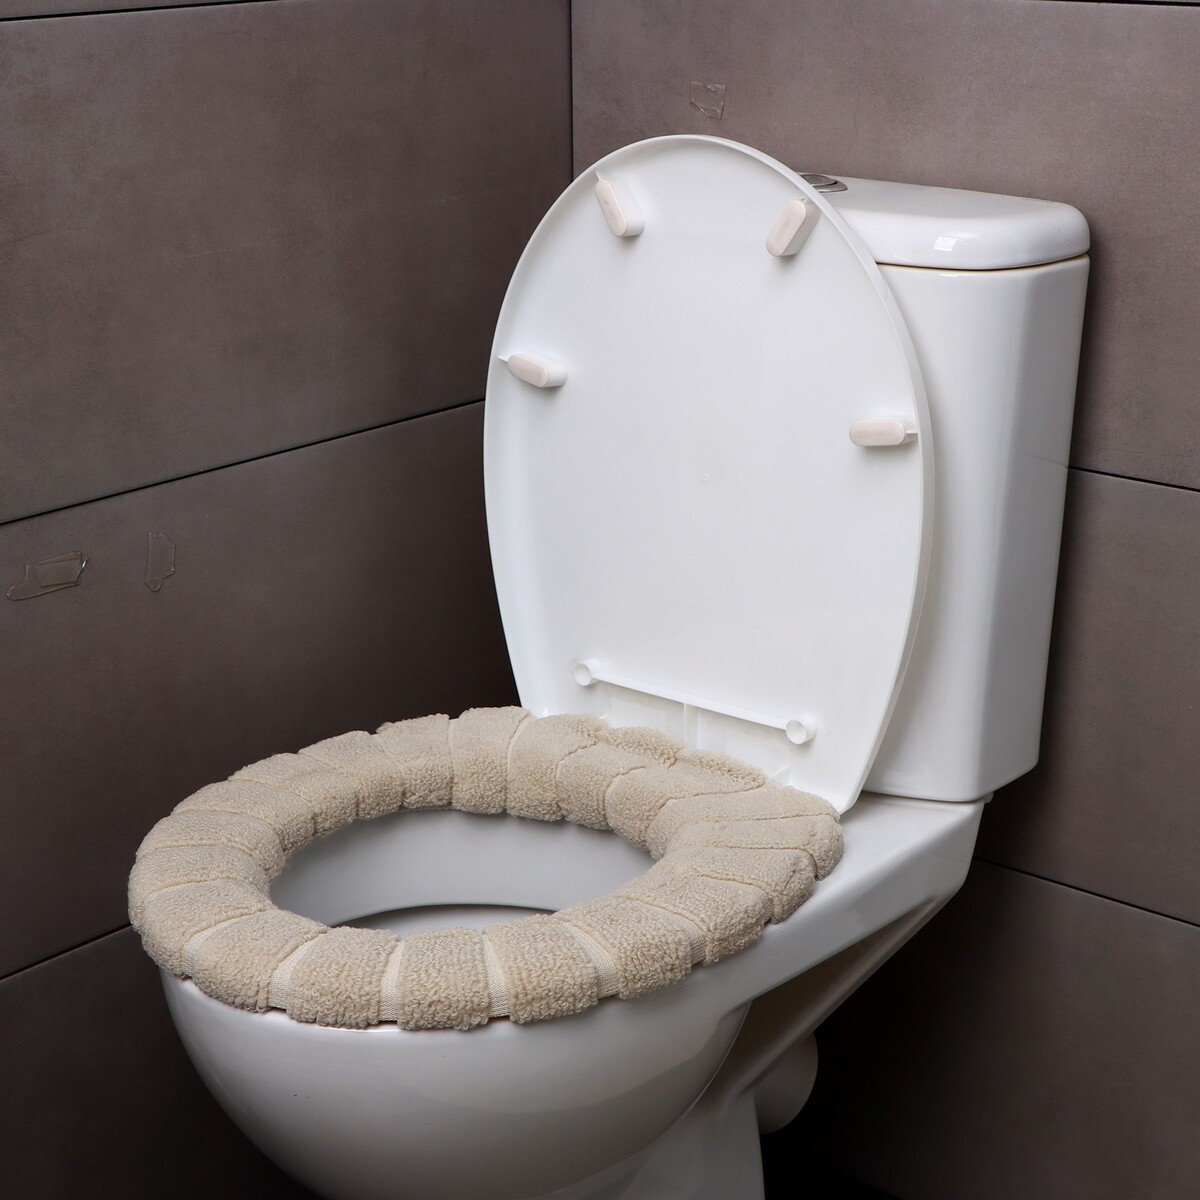 Мягкий чехол накладка на крышку и сиденье унитаза (бежевая) игрушка для ванной в виде медведя nuuroo zaza бежевая